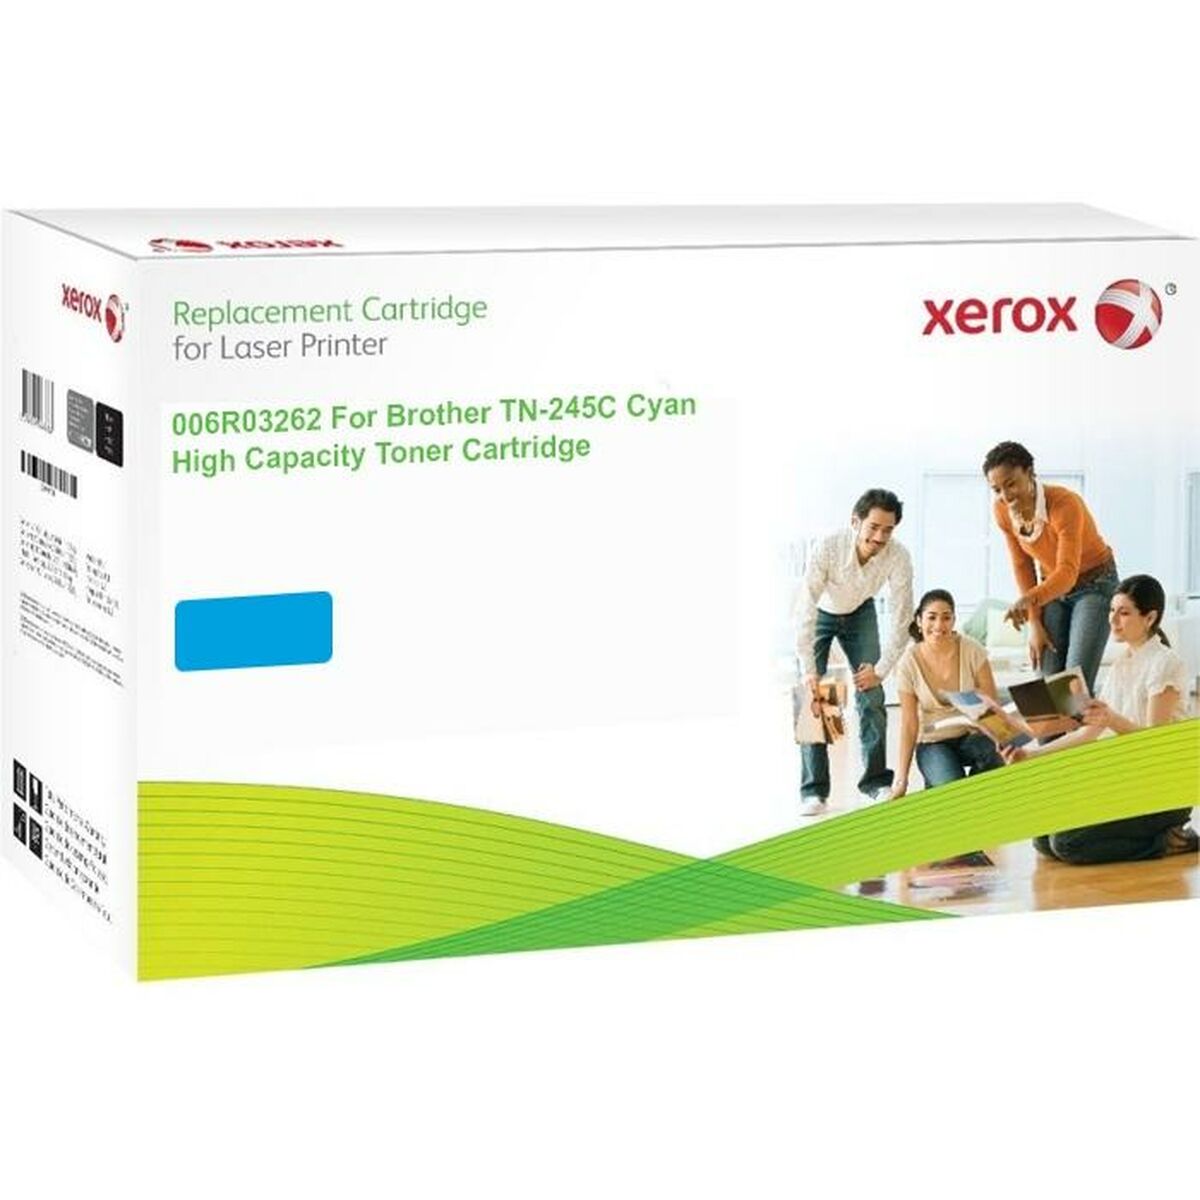 Toner Xerox Cartucho de tóner cian. Equivalente a Brother TN245C. Compatible con Brother DCP-9020, HL-3140, HL-3150, HL-3170, MF